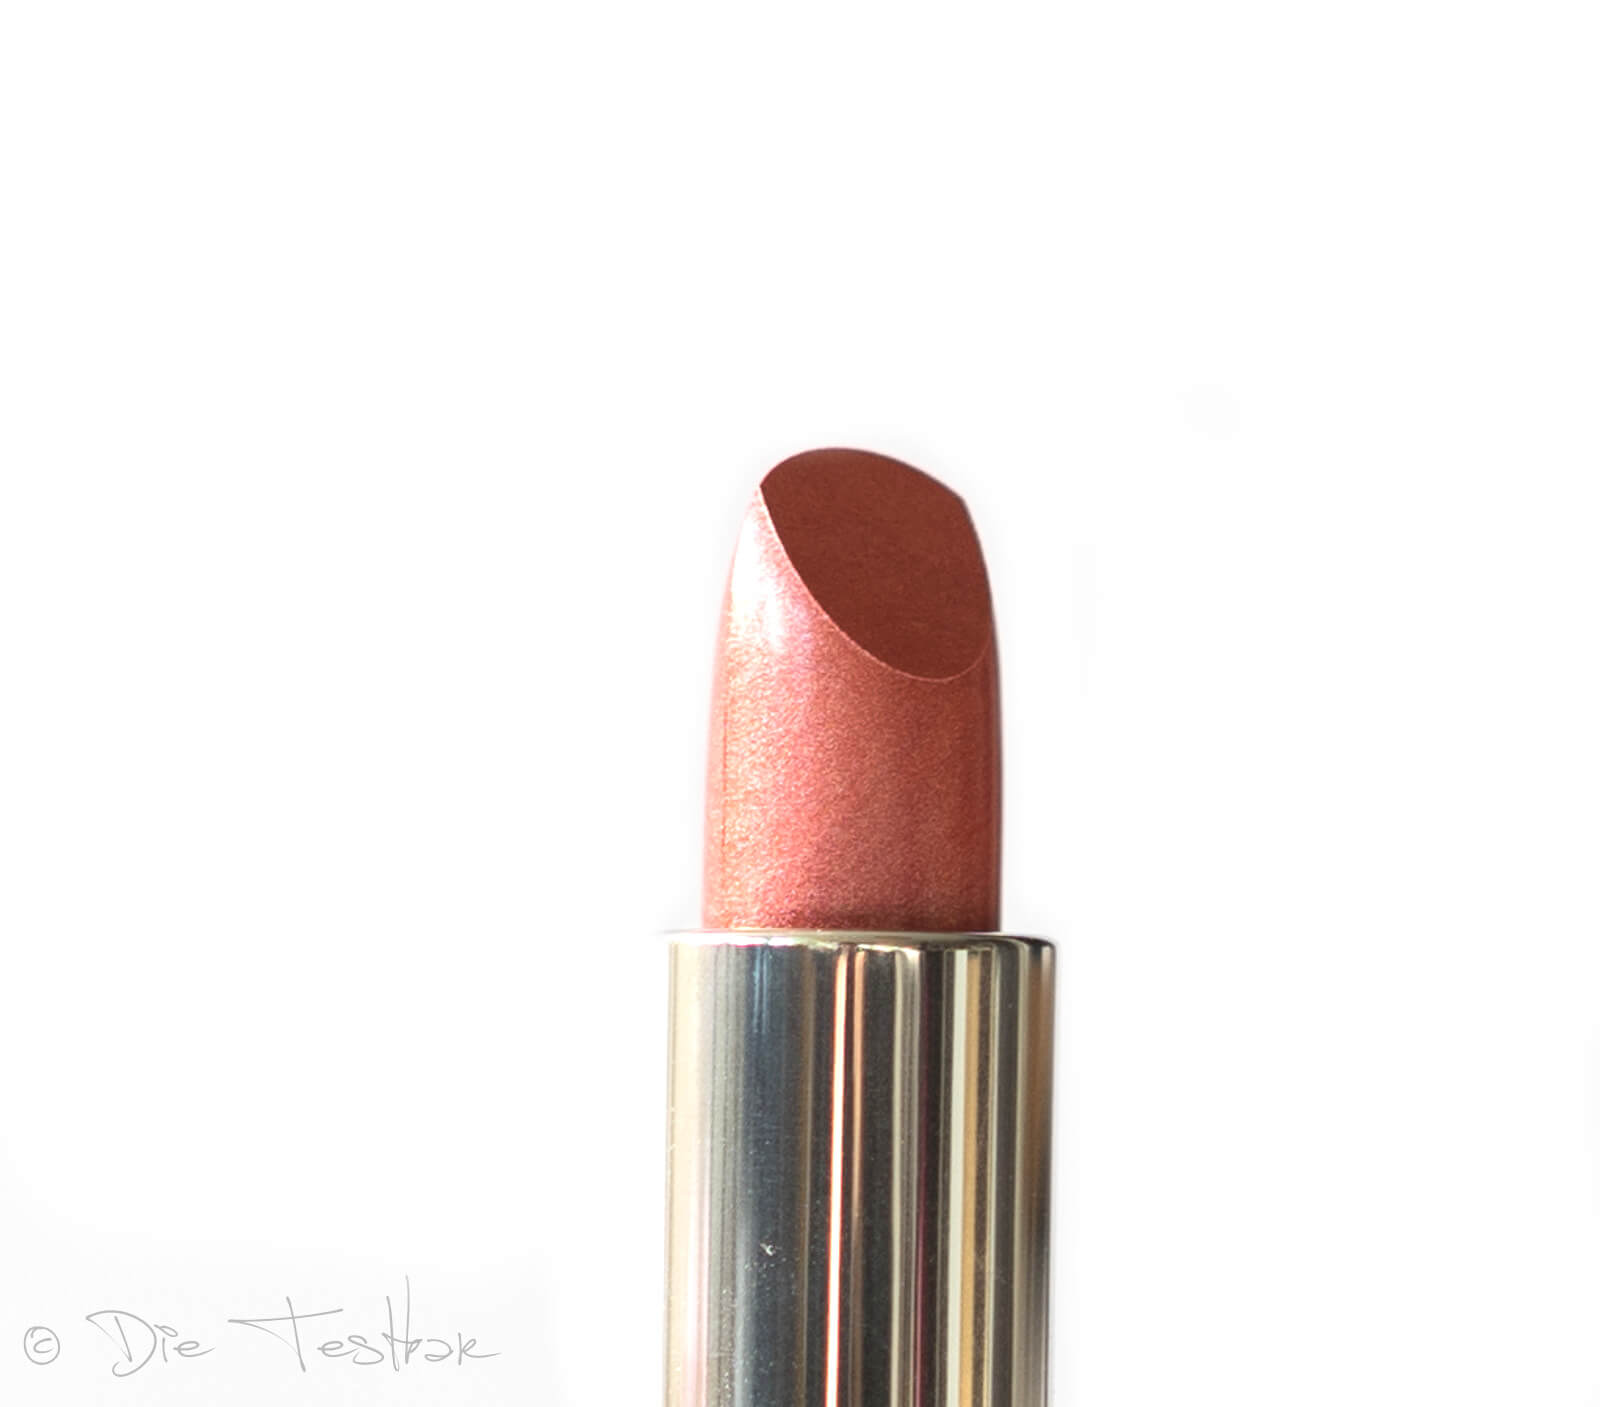 Für wunderschöne Lippen - Hochwertiges Lippen-Make-up vom makeupcoach 13